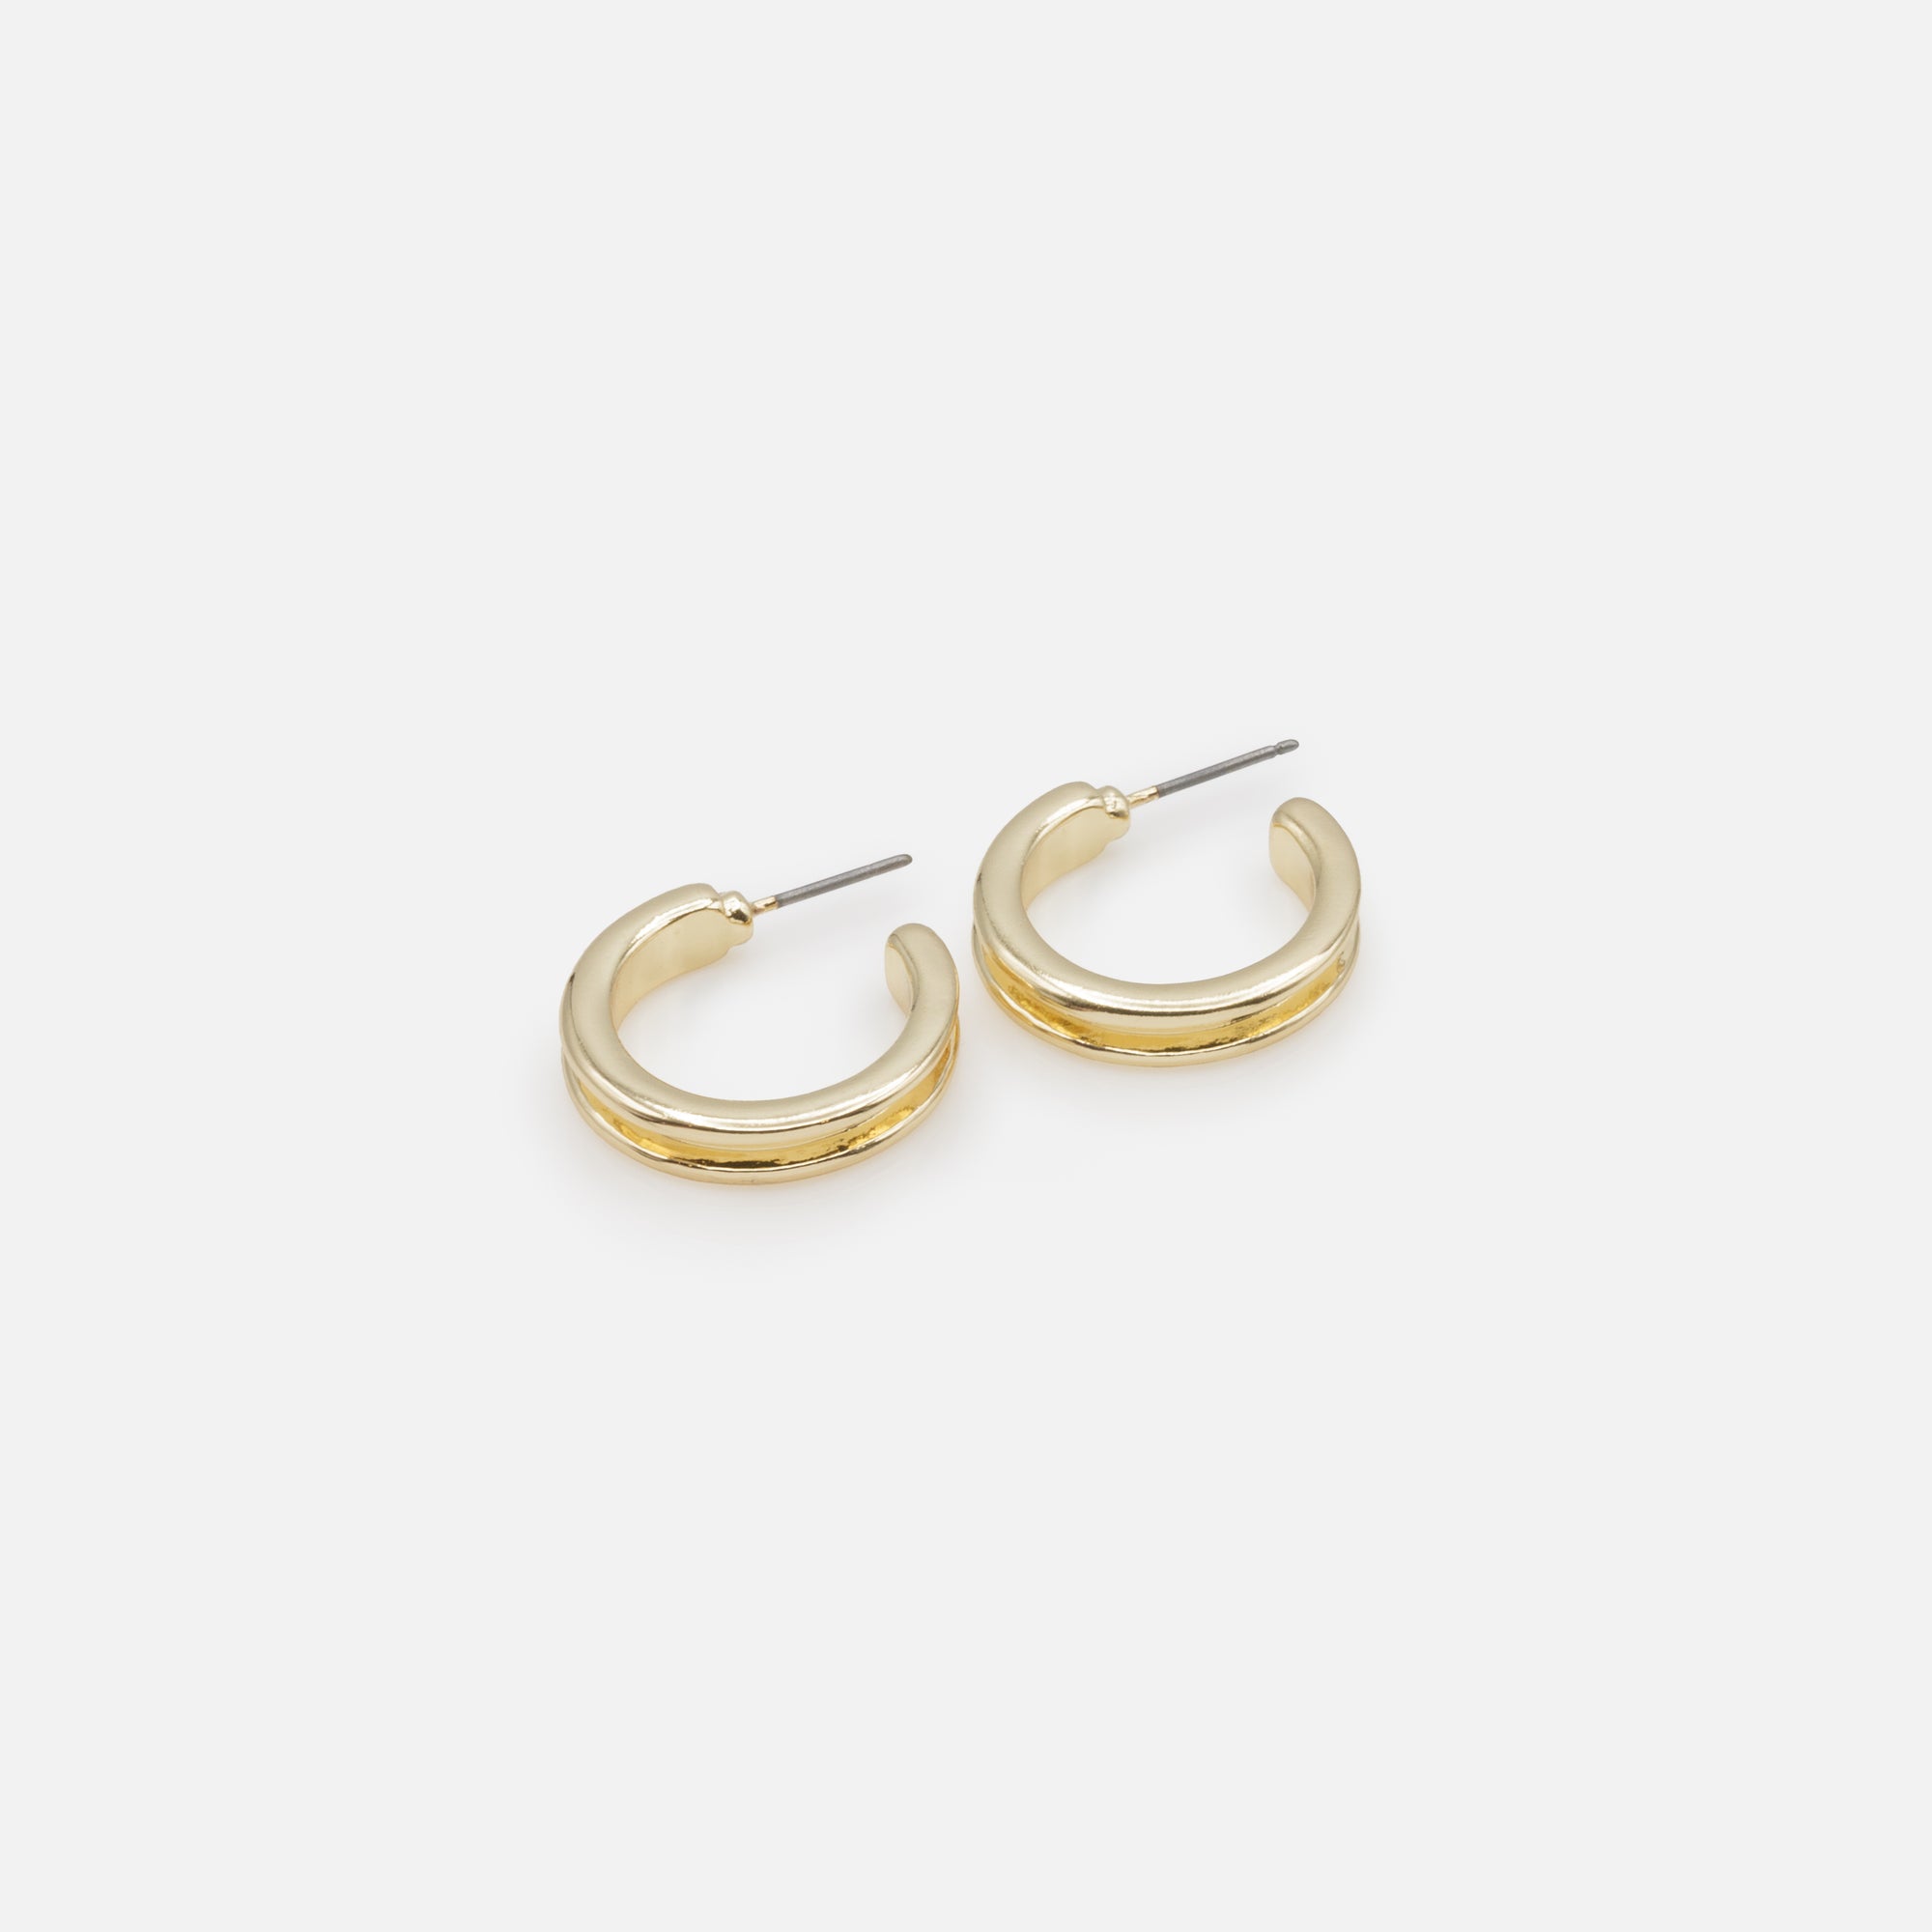 Duo de boucles d'oreilles anneaux dorés entrecroisés et renfoncés